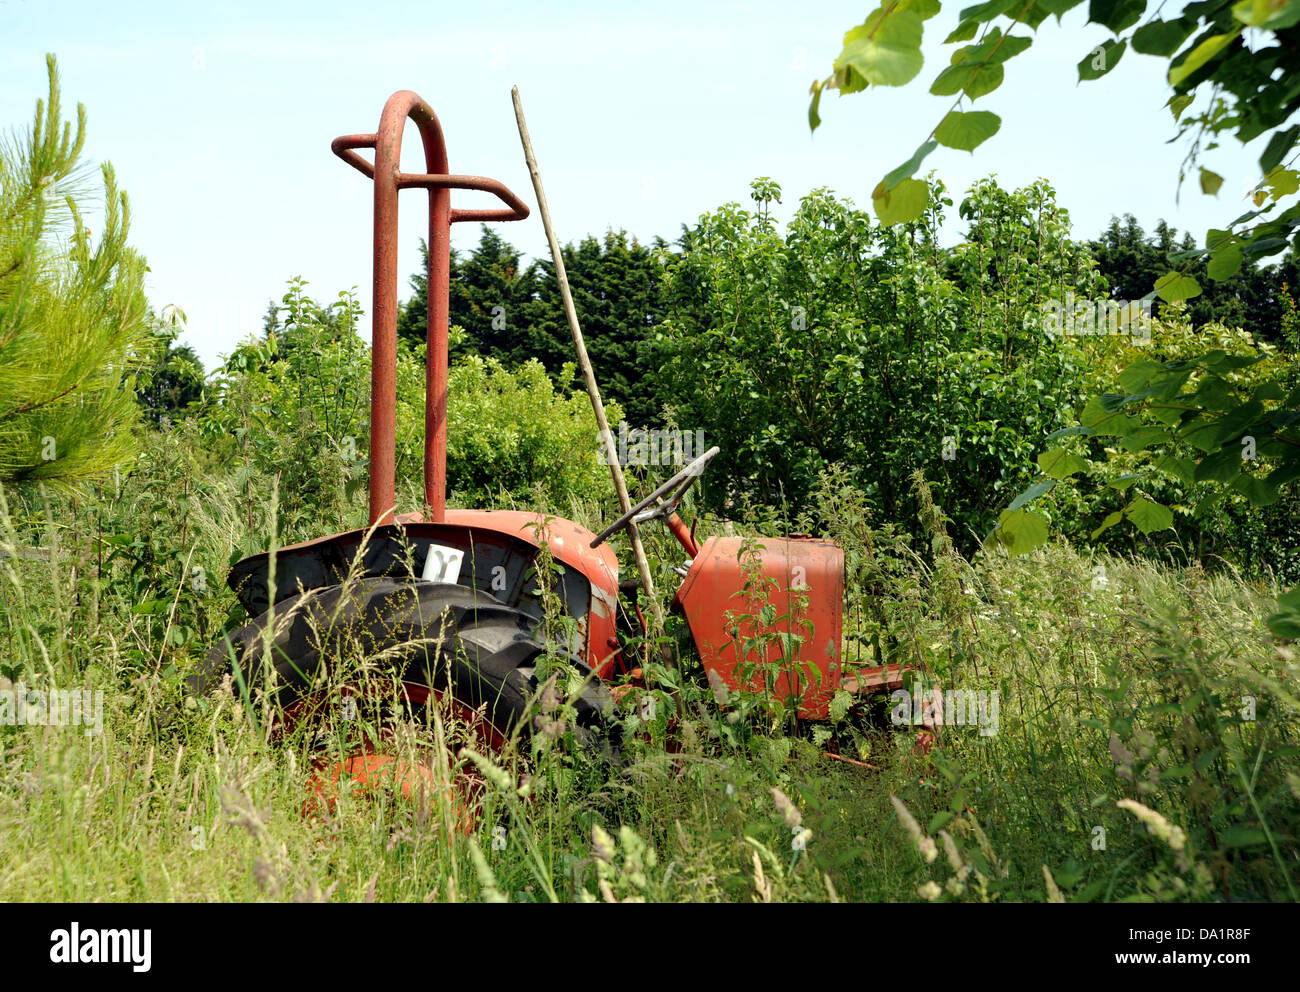 Tracteur agricole désaffecté parmi l'herbe envahi Banque D'Images